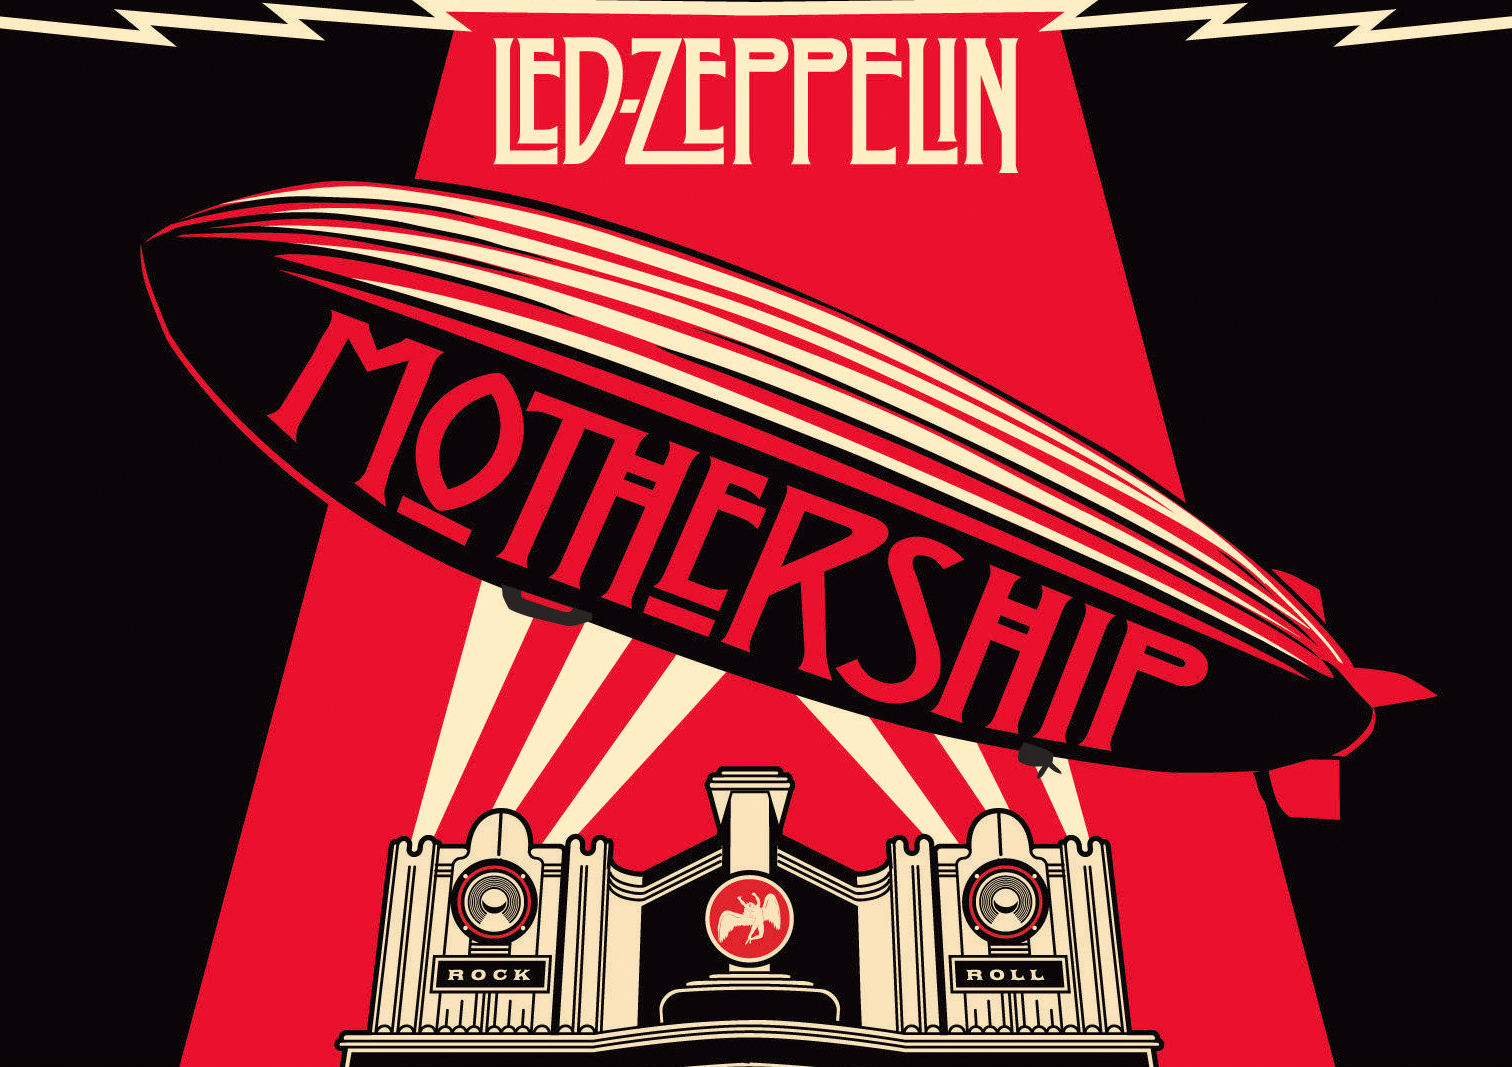 led zeppelin, hard rock, album cover, music